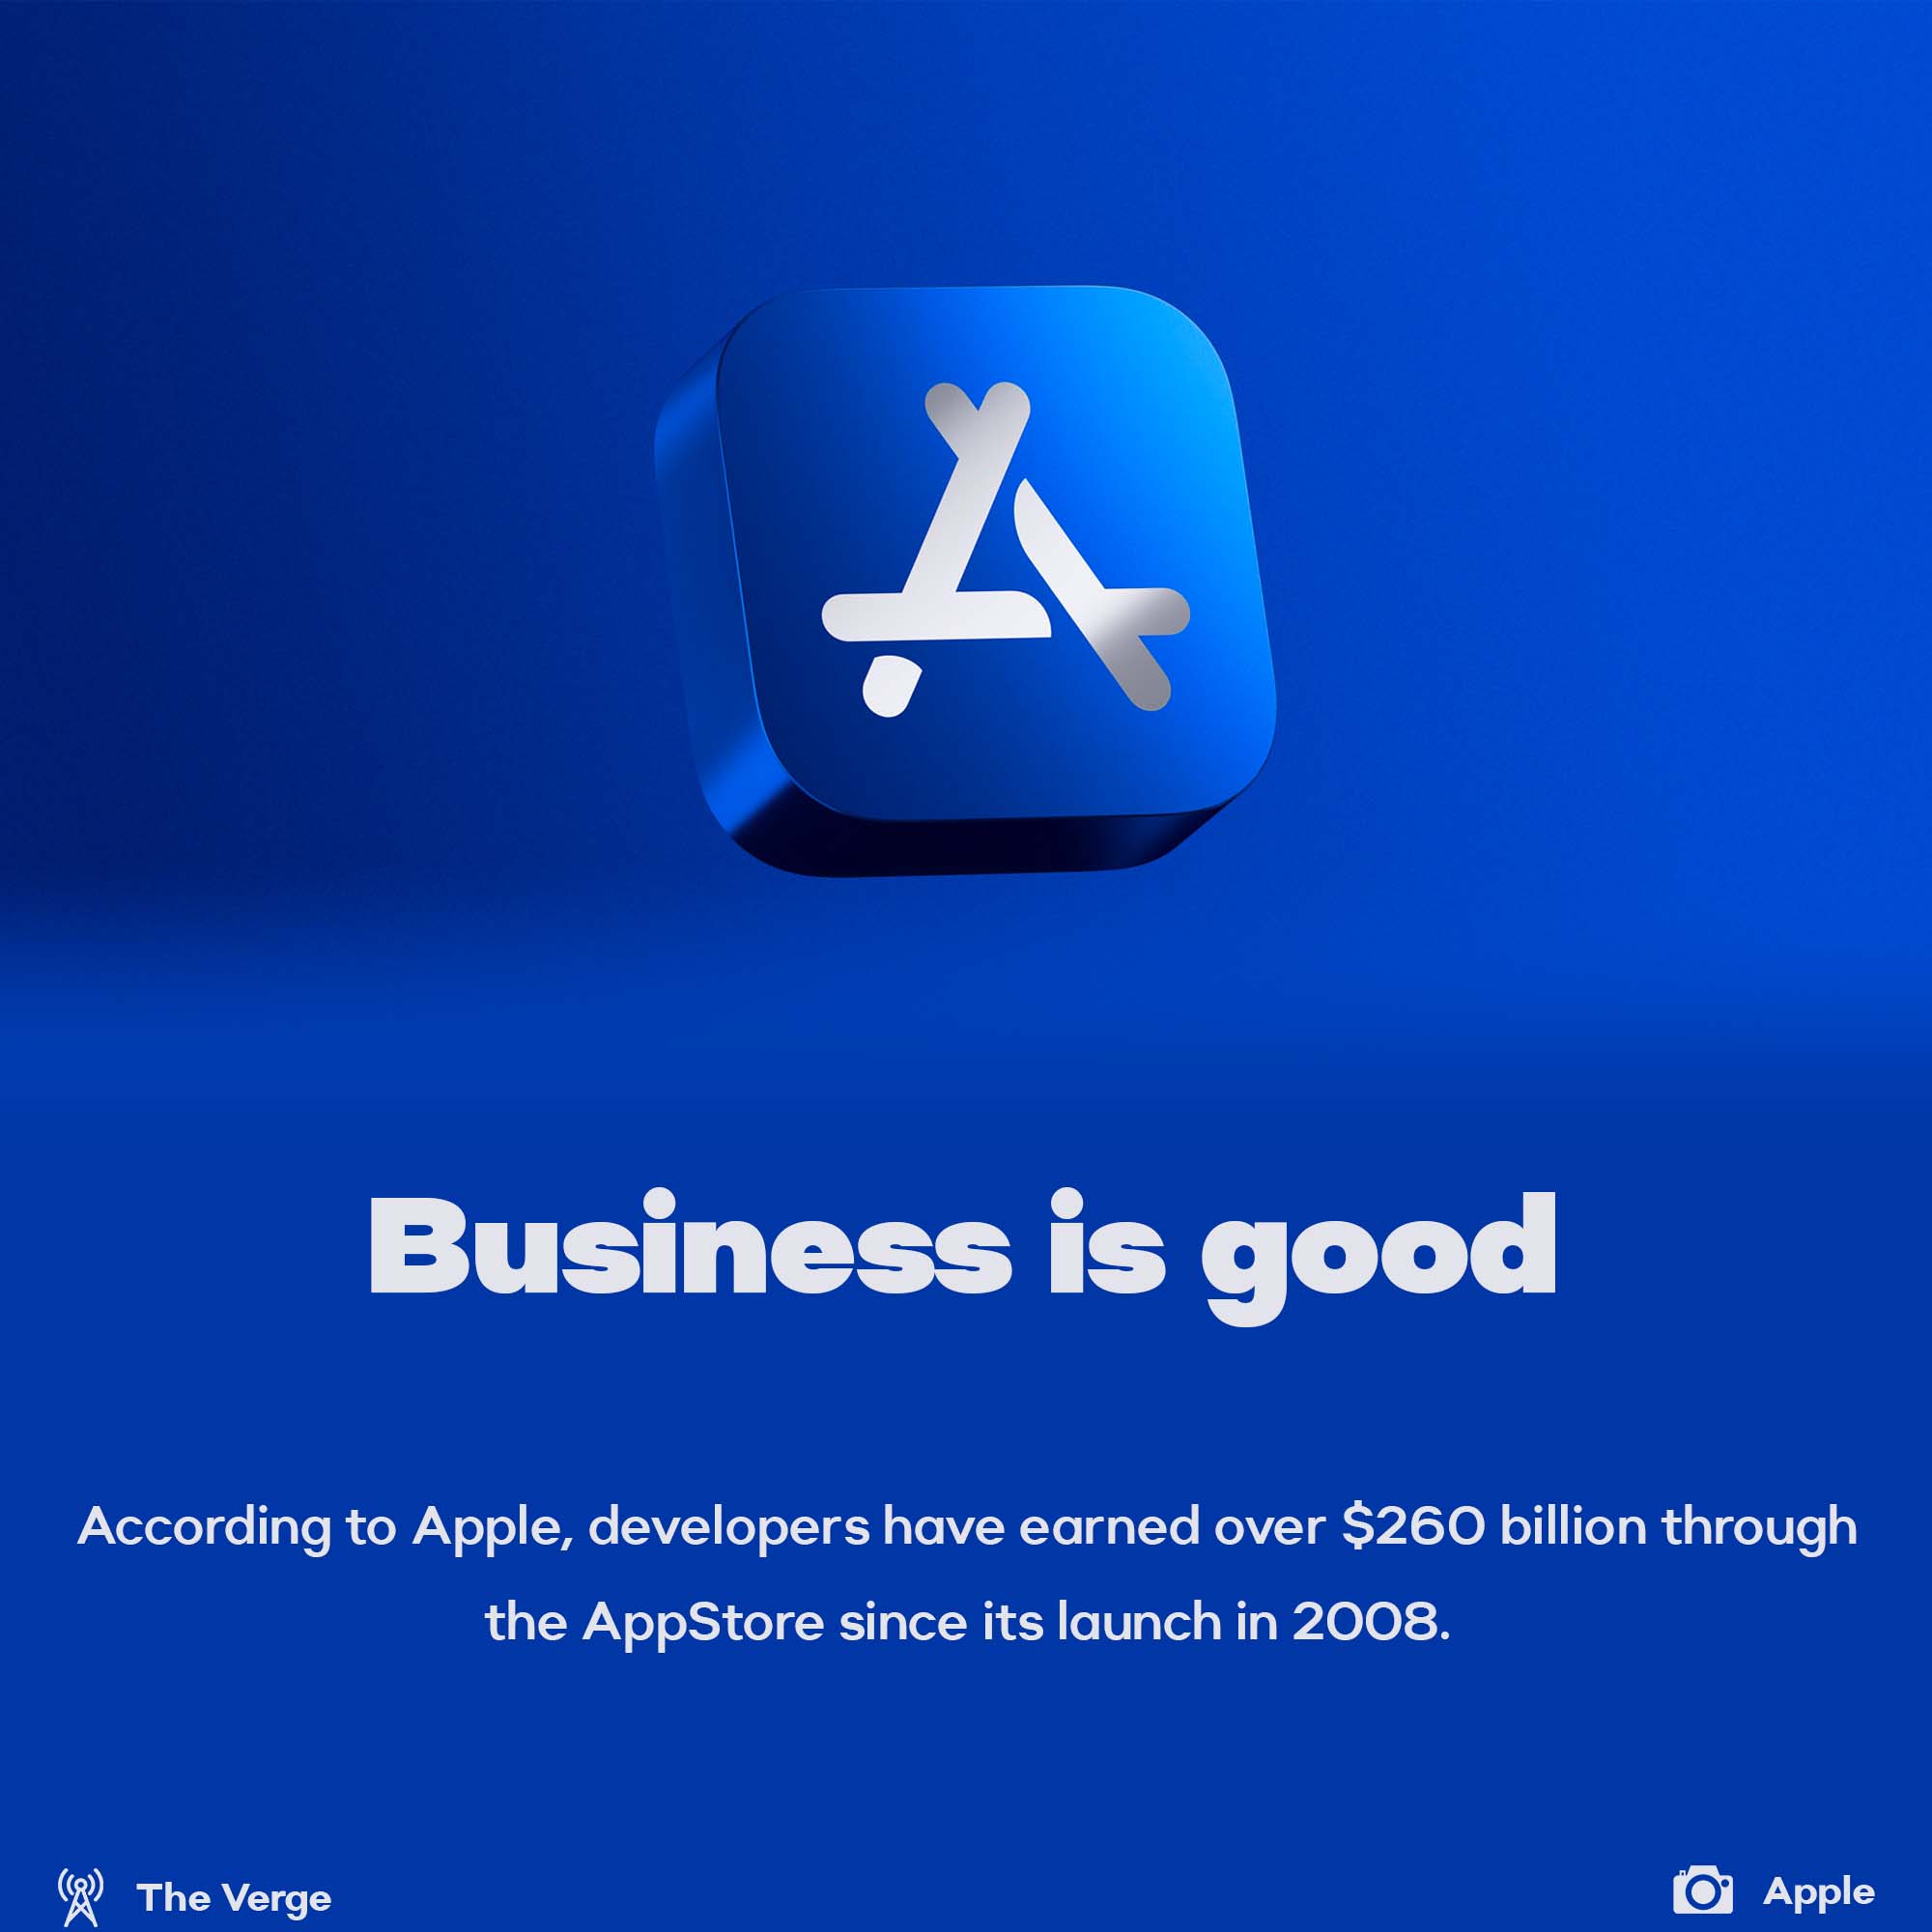 AppStore developers earned $260 billion